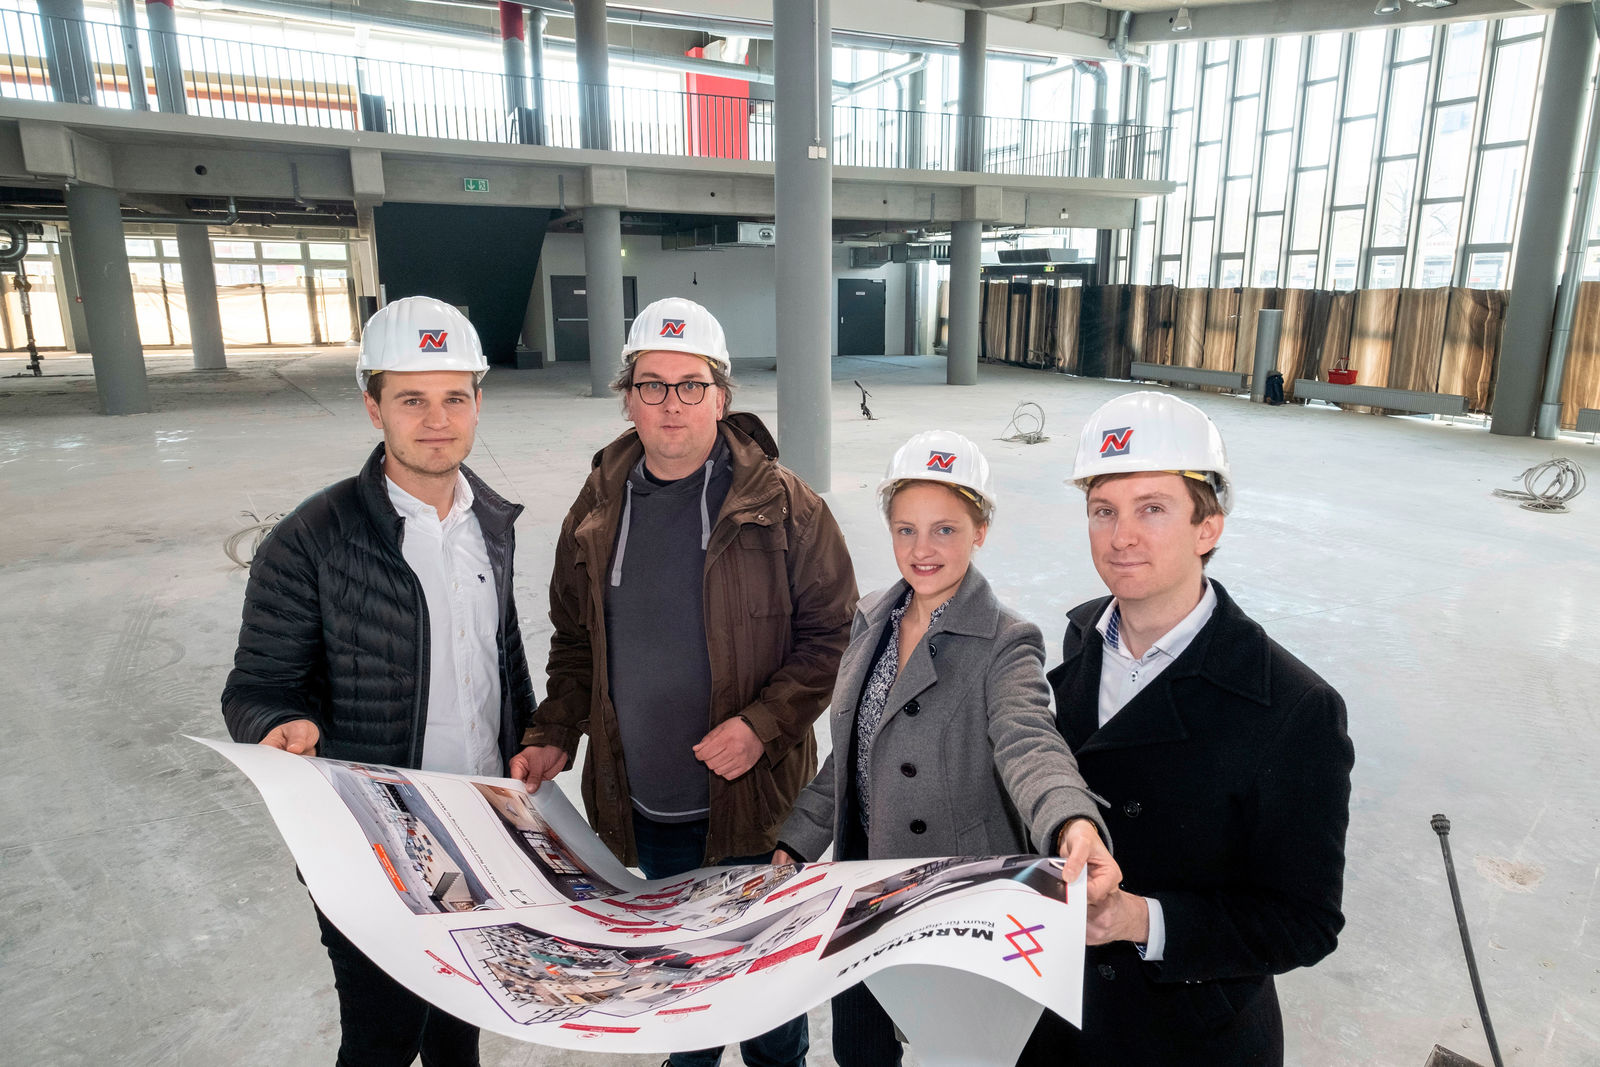 Umbau am Nordkopf hat begonnen: Die Markthalle wird zum Raum für digitale Ideen